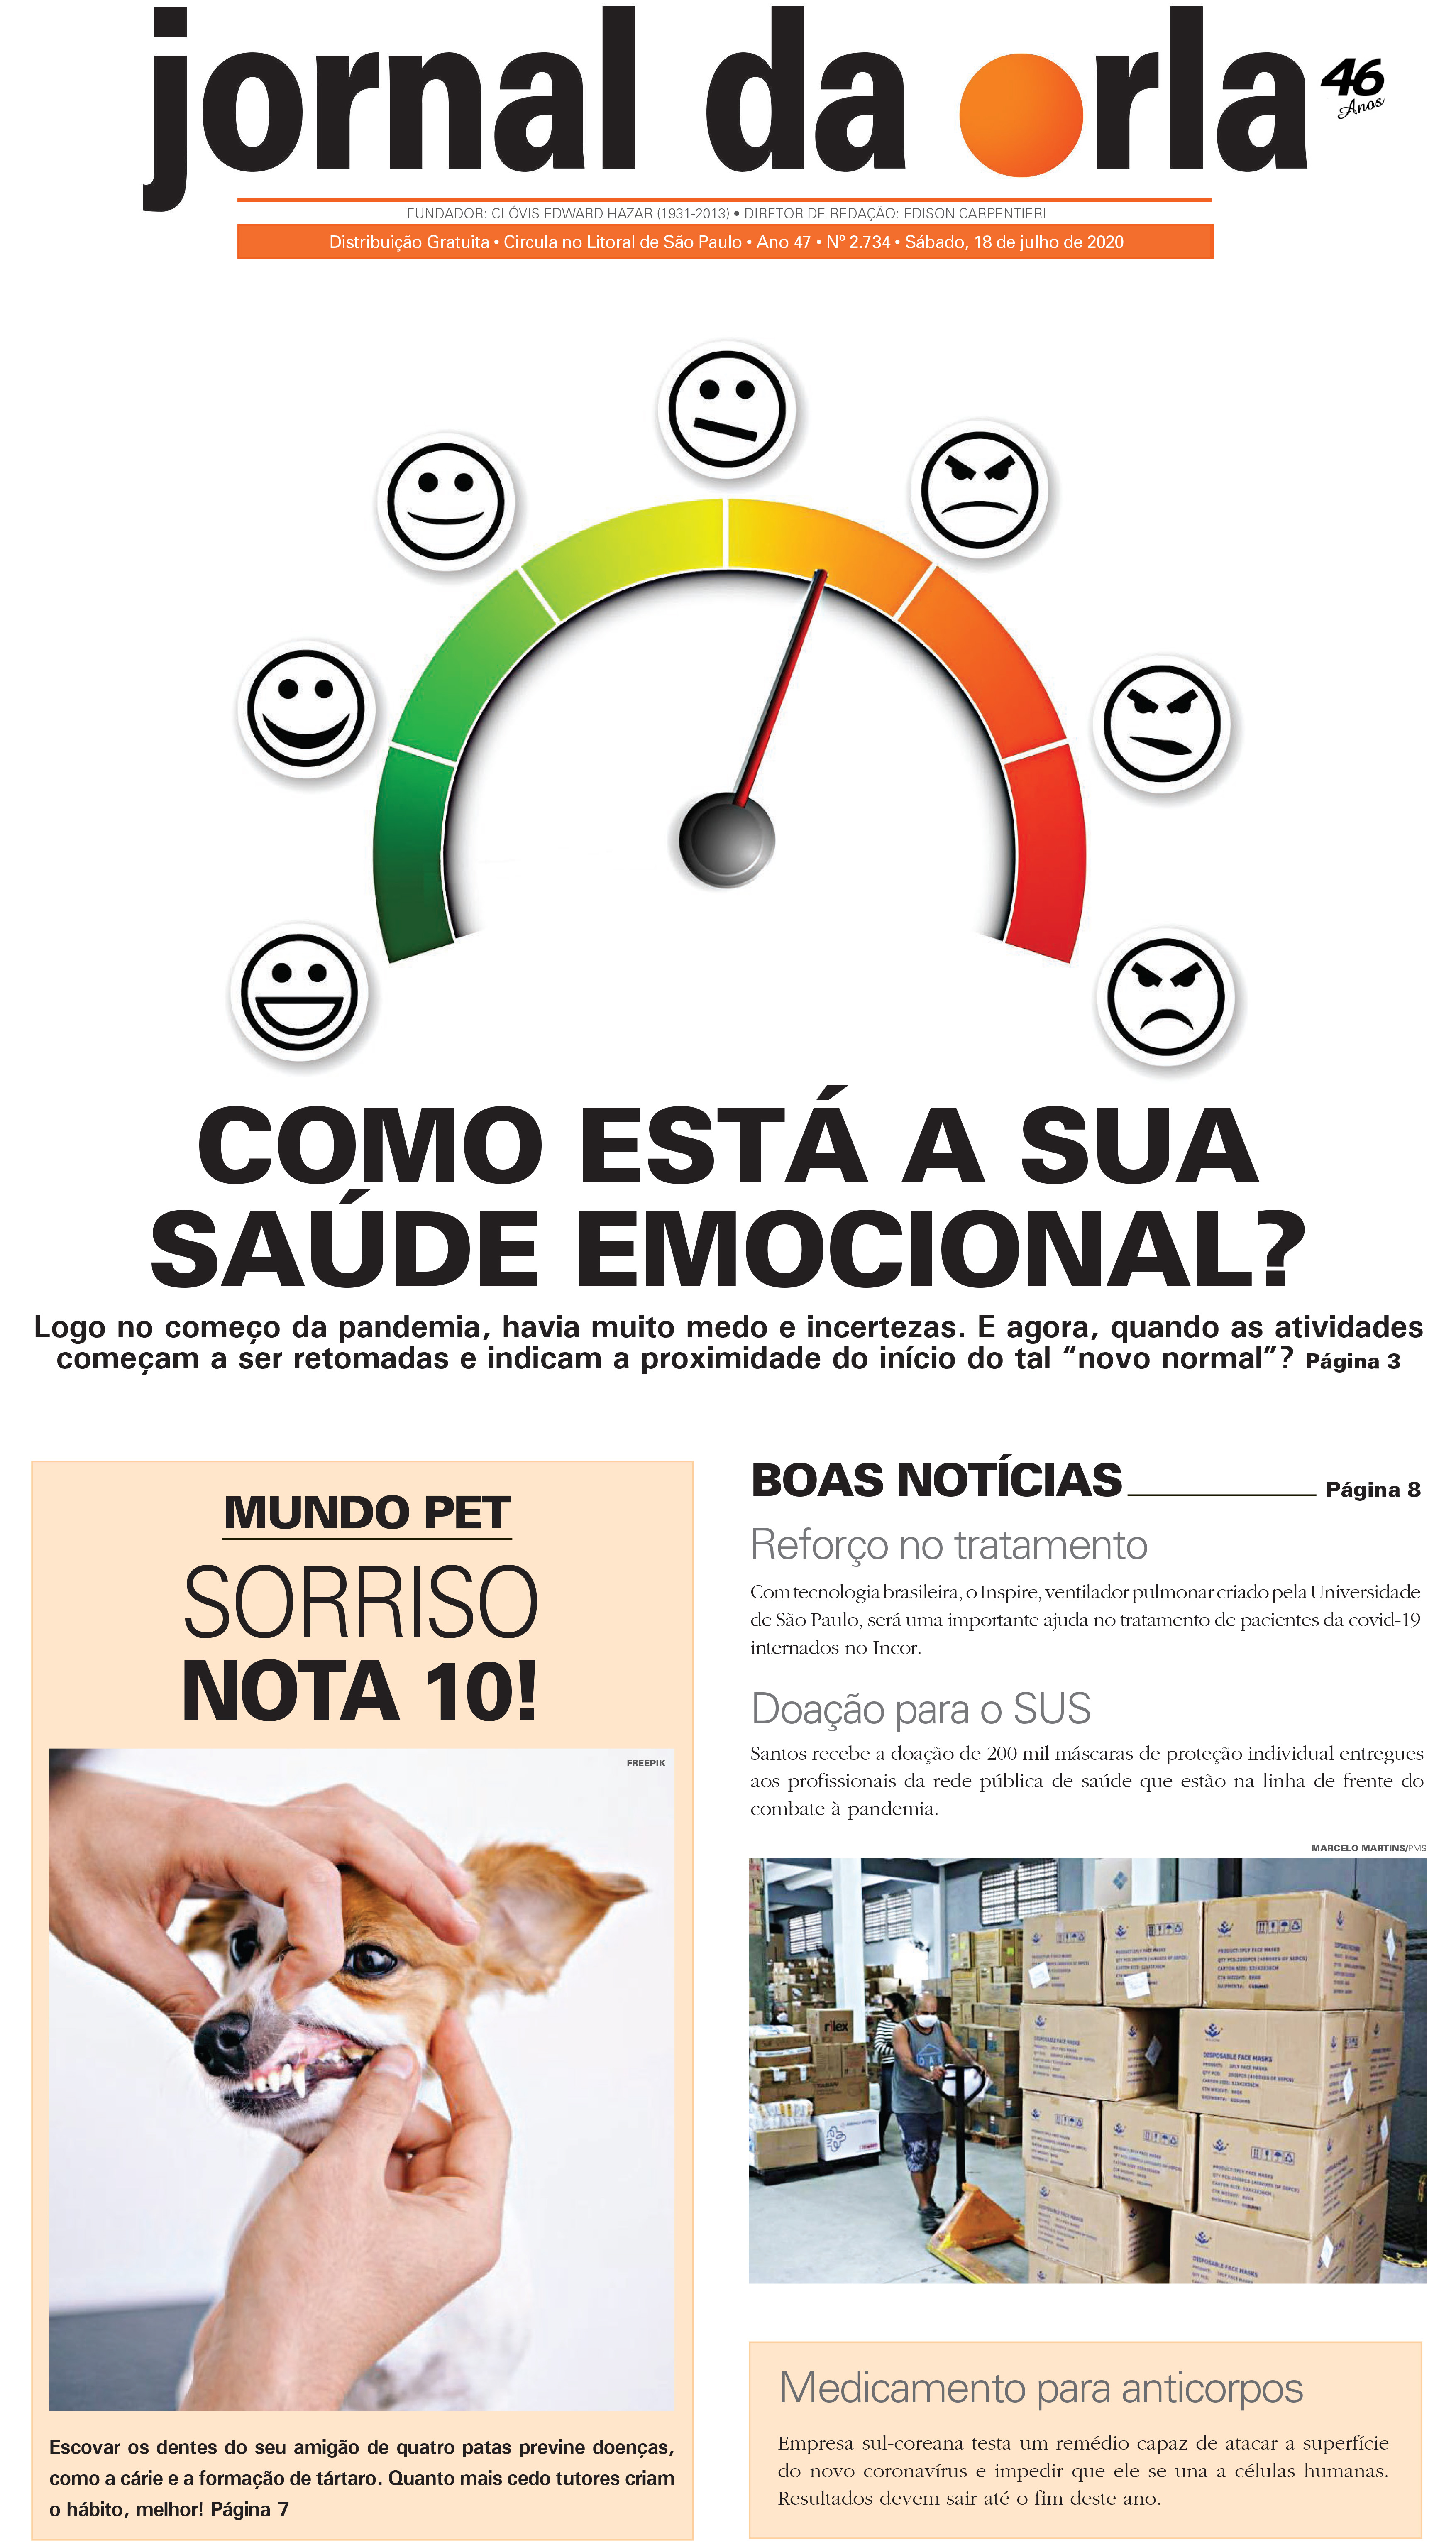 18/07/2020 | Jornal da Orla